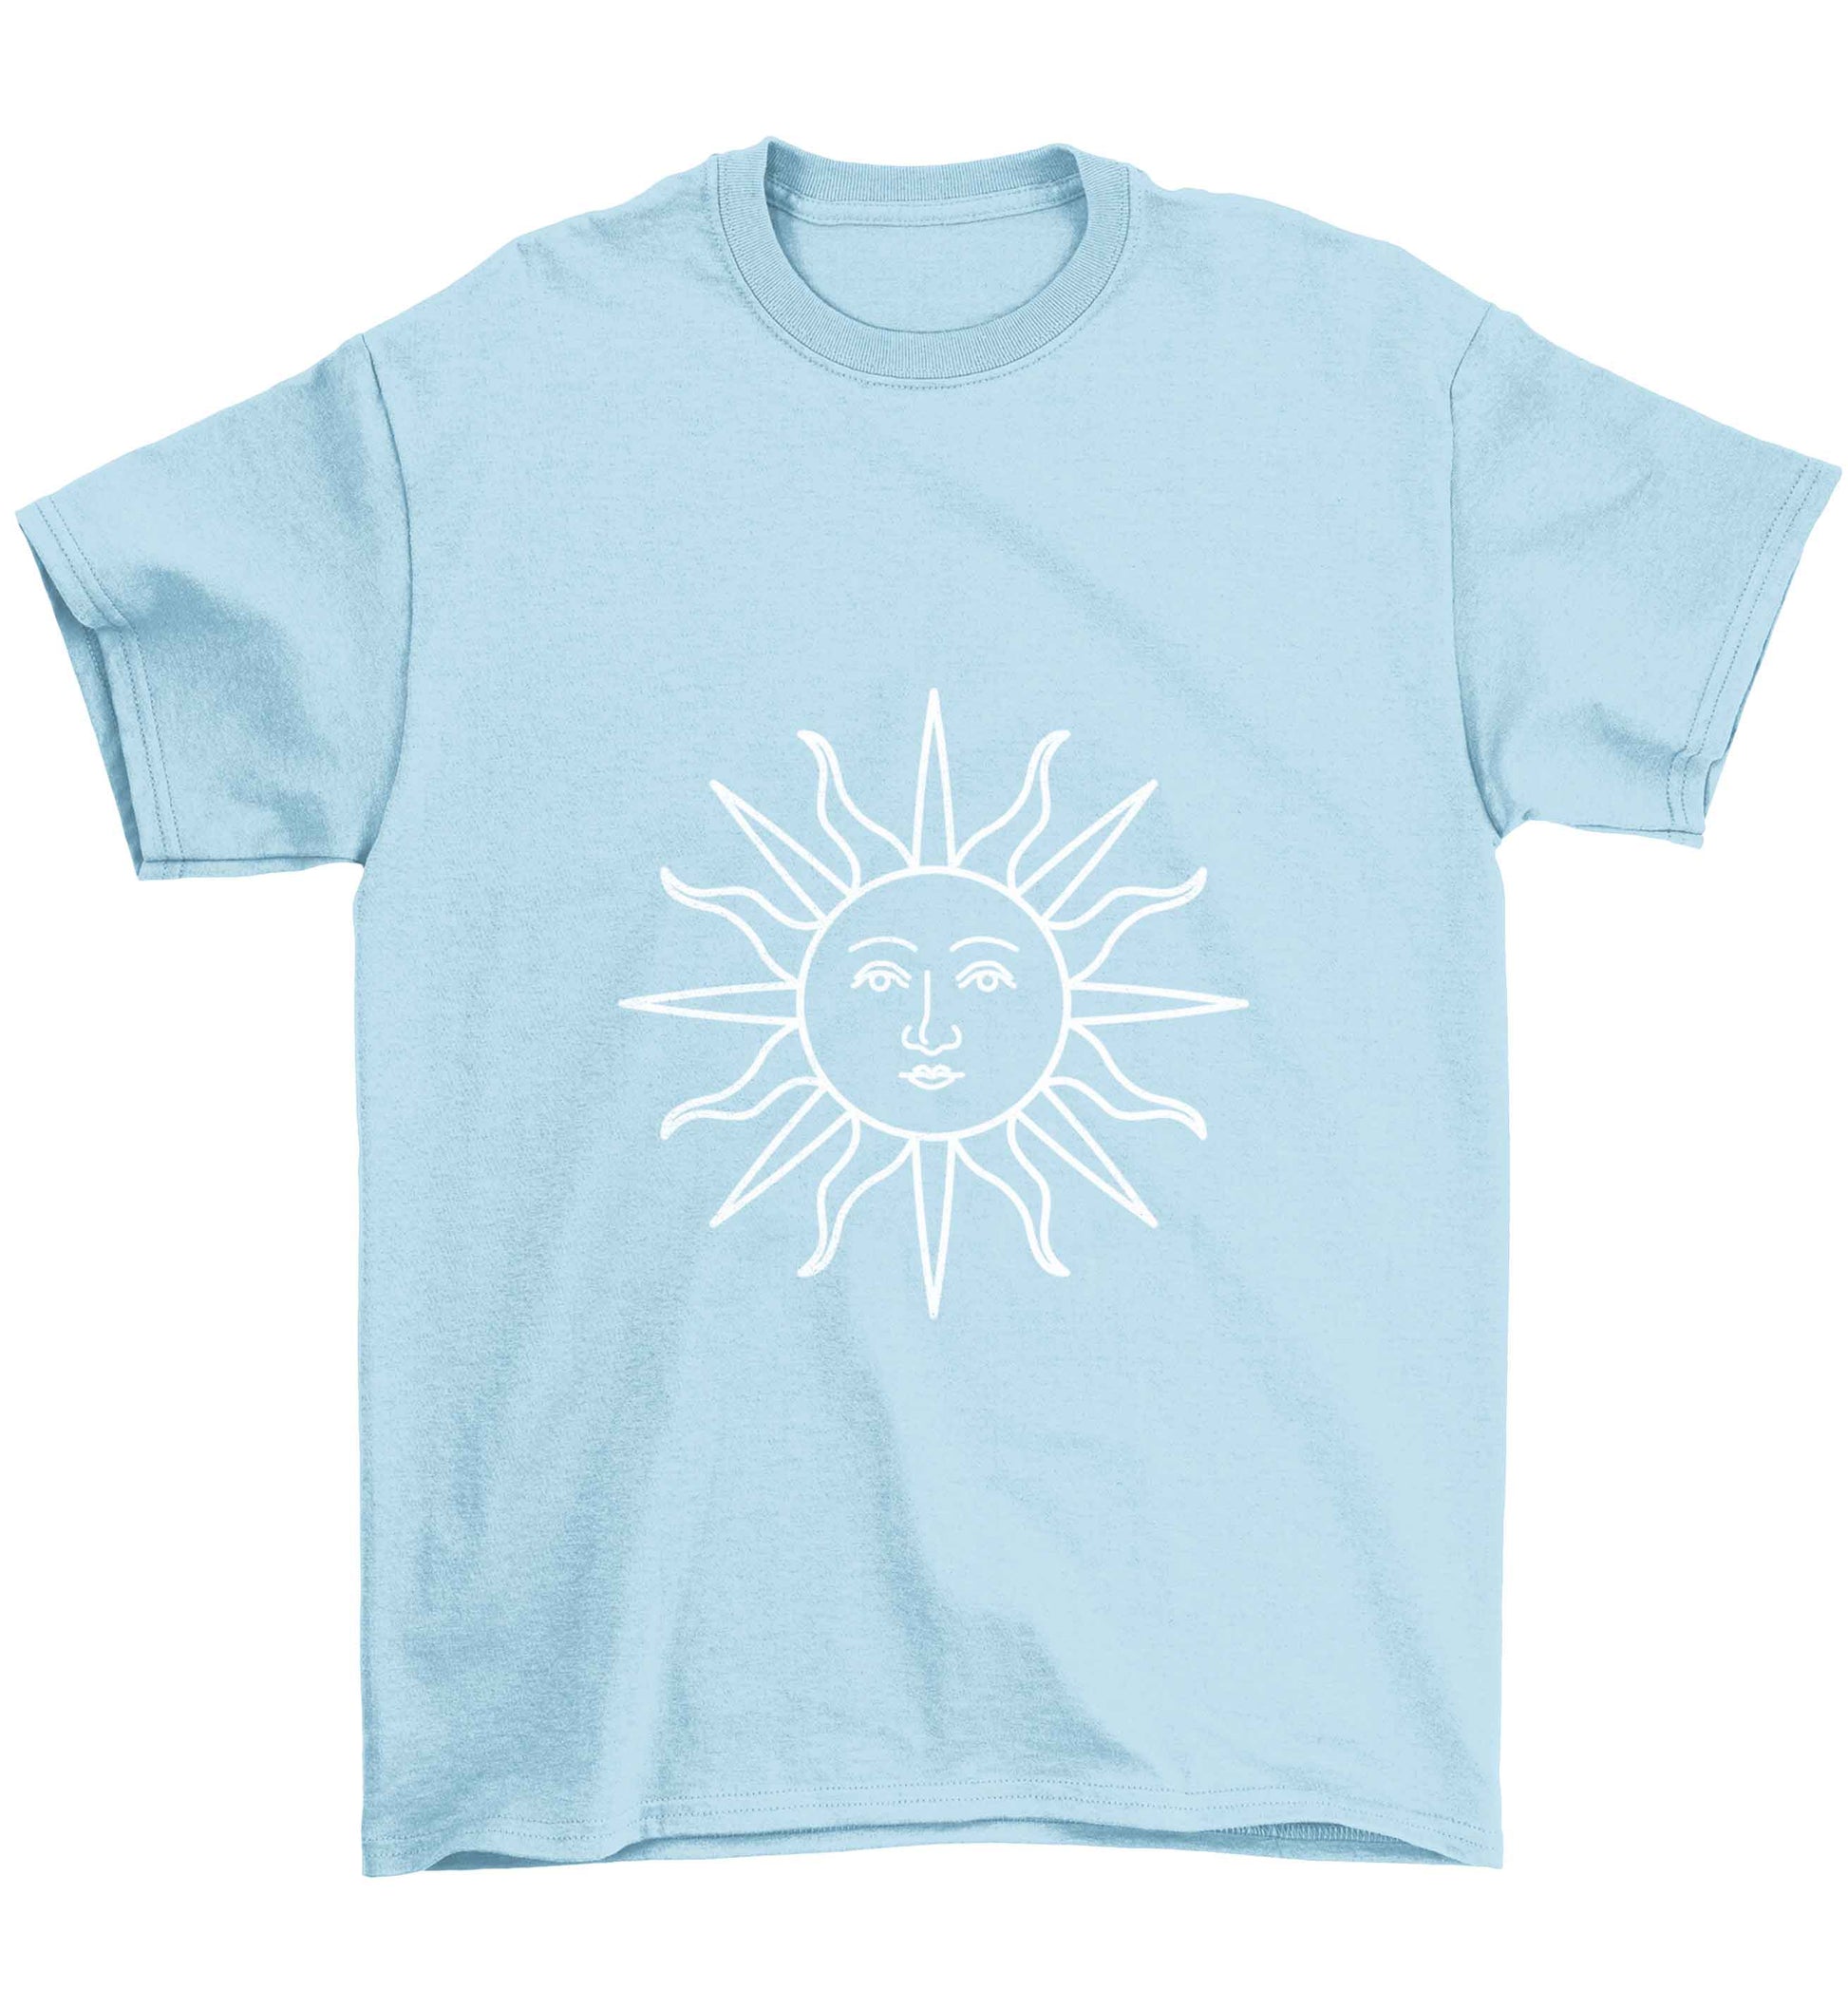 Sun face illustration Children's light blue Tshirt 12-13 Years